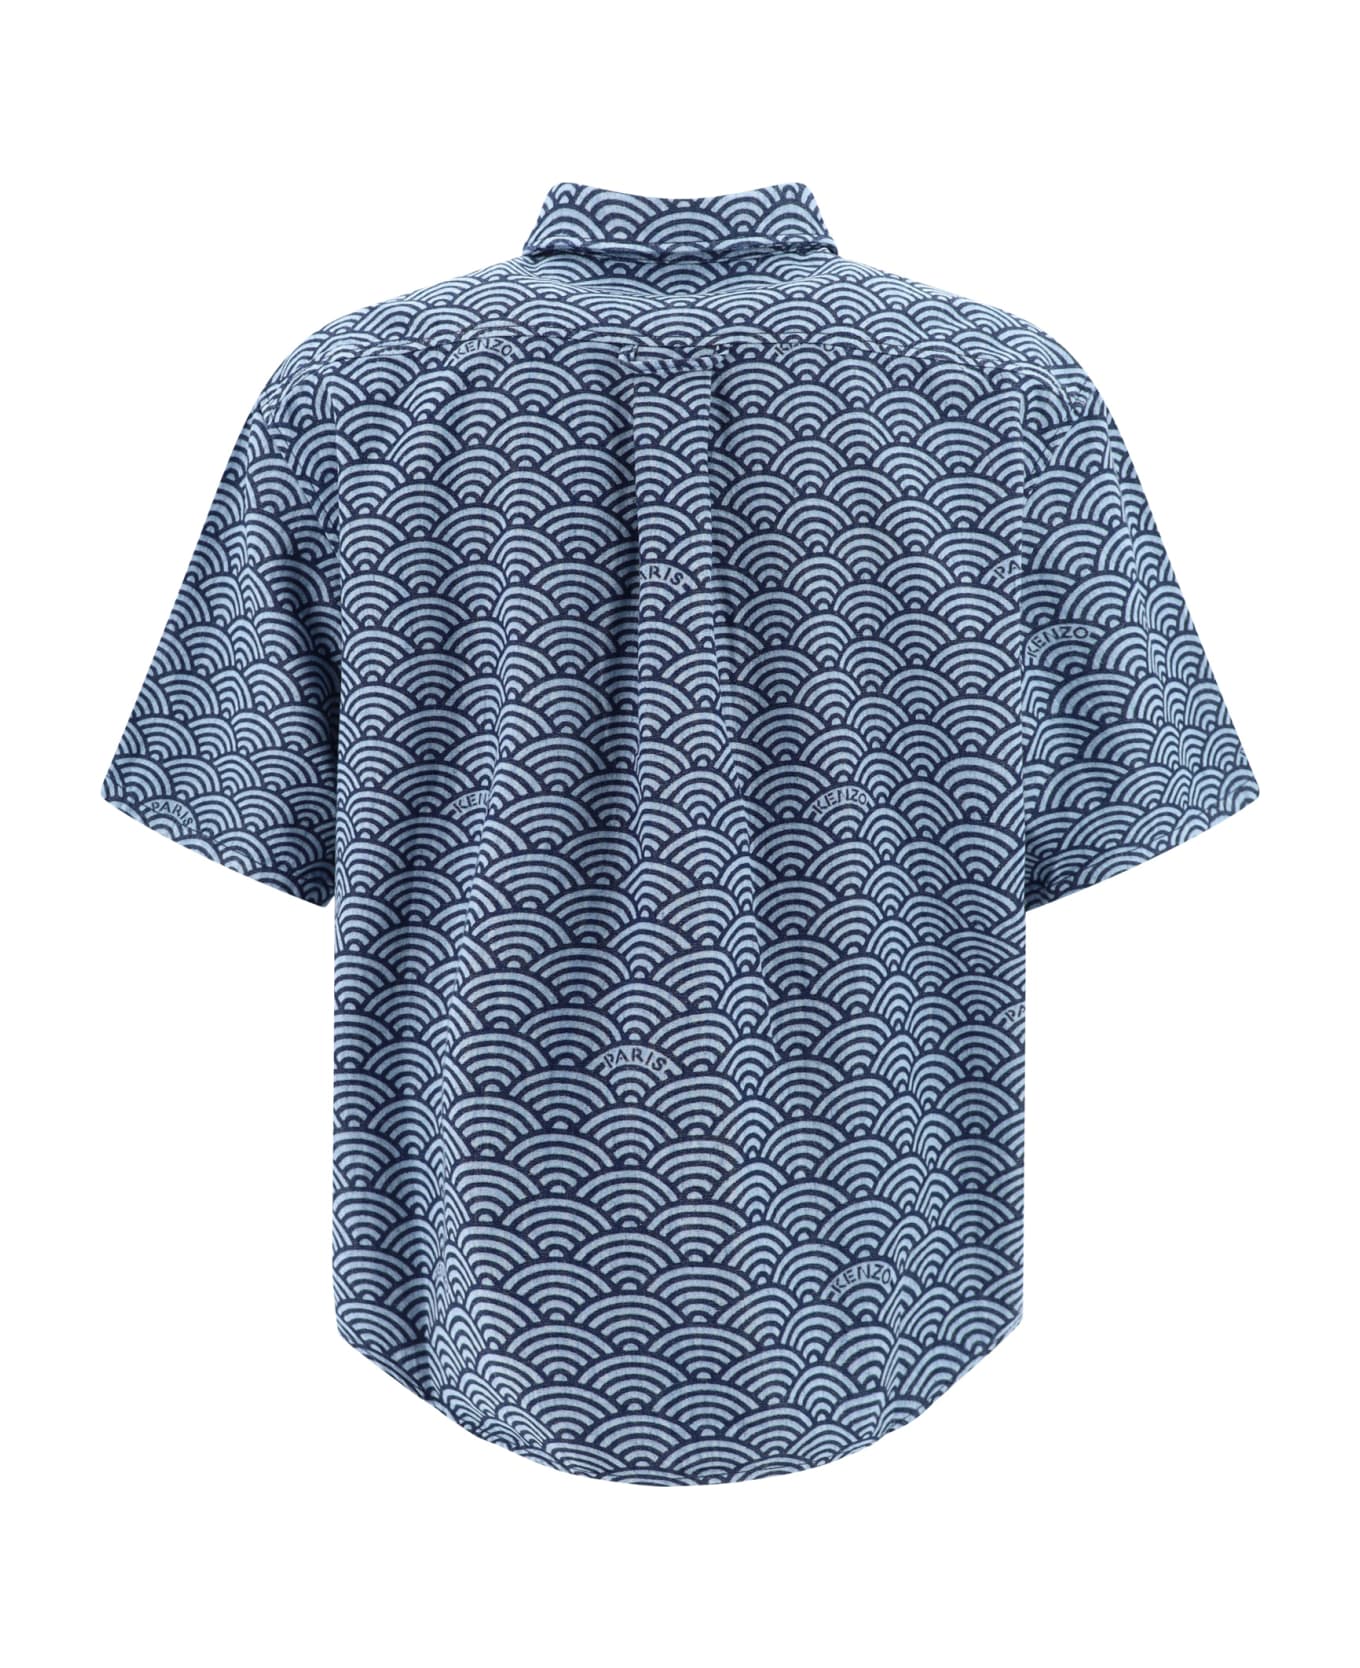 Kenzo Printed Denim Shirt - Rinse Blue Denim